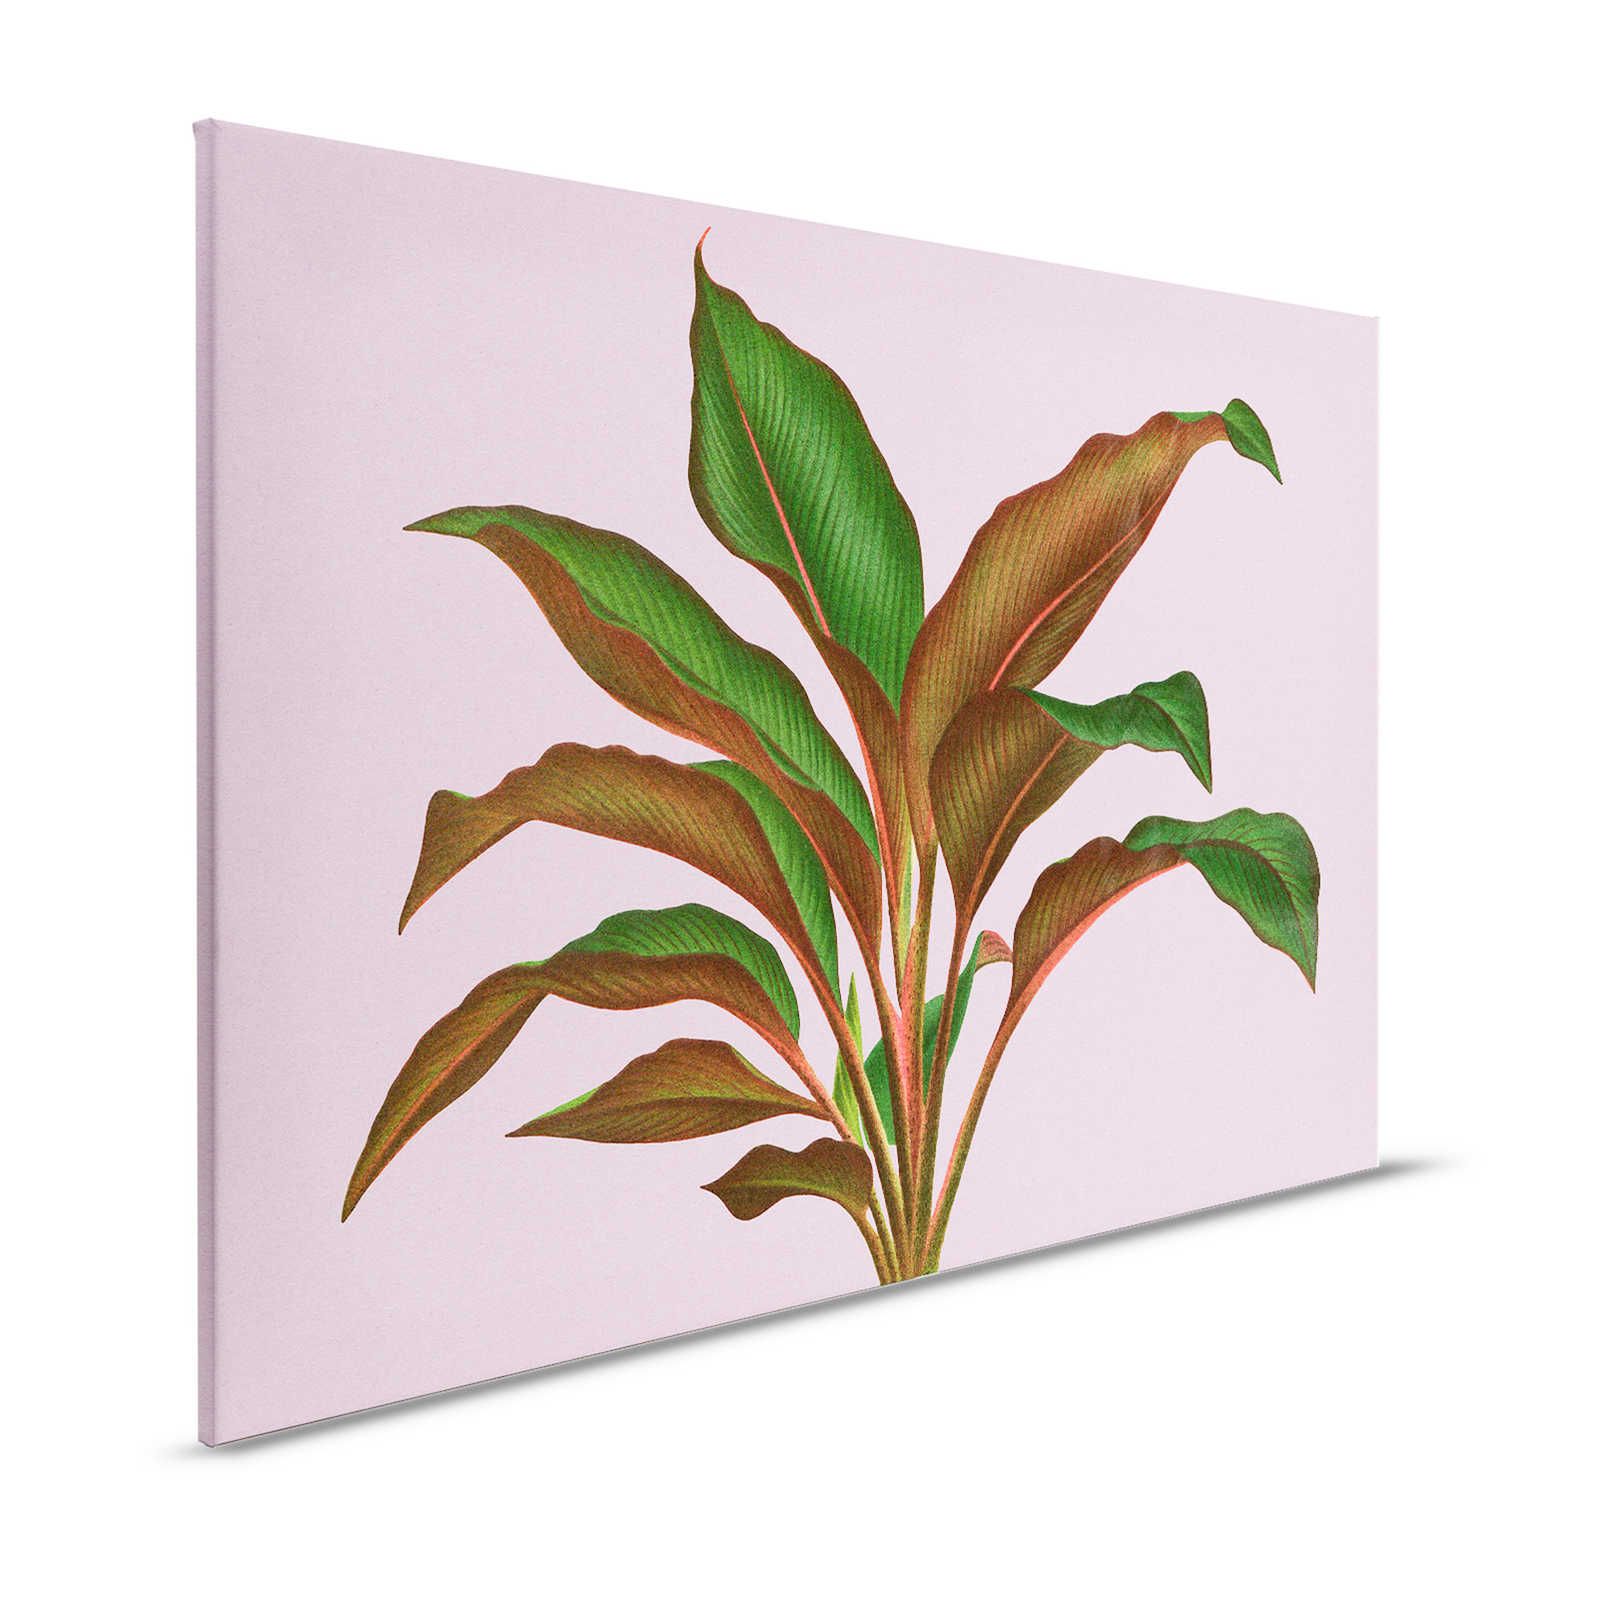 Leaf Garden 3 - Quadro su tela con foglie Rosa con foglia di felce tropicale - 1,20 m x 0,80 m
